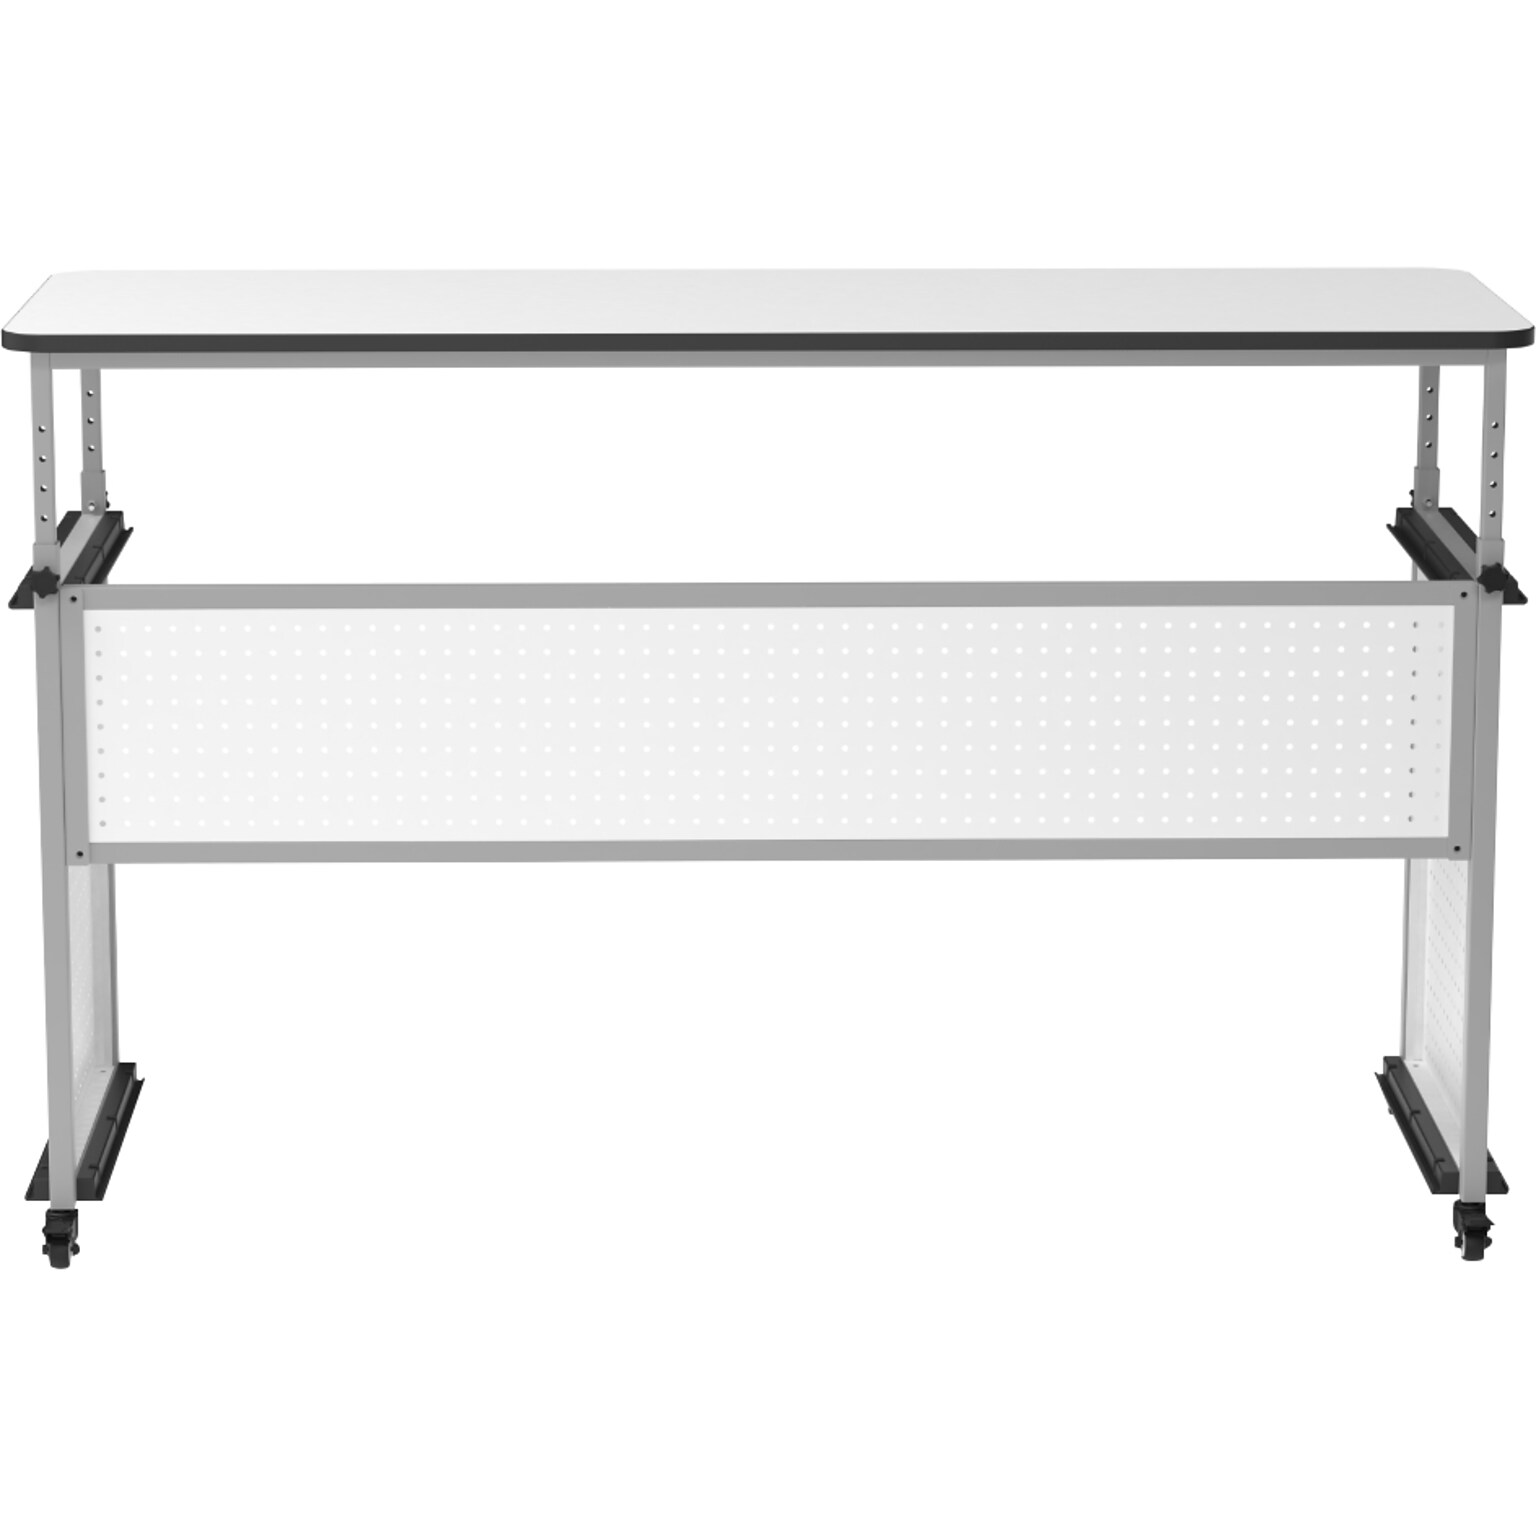 Luxor 32-38H Adjustable Standing Modular Teacher Desk, White/Gray (DTTB002)